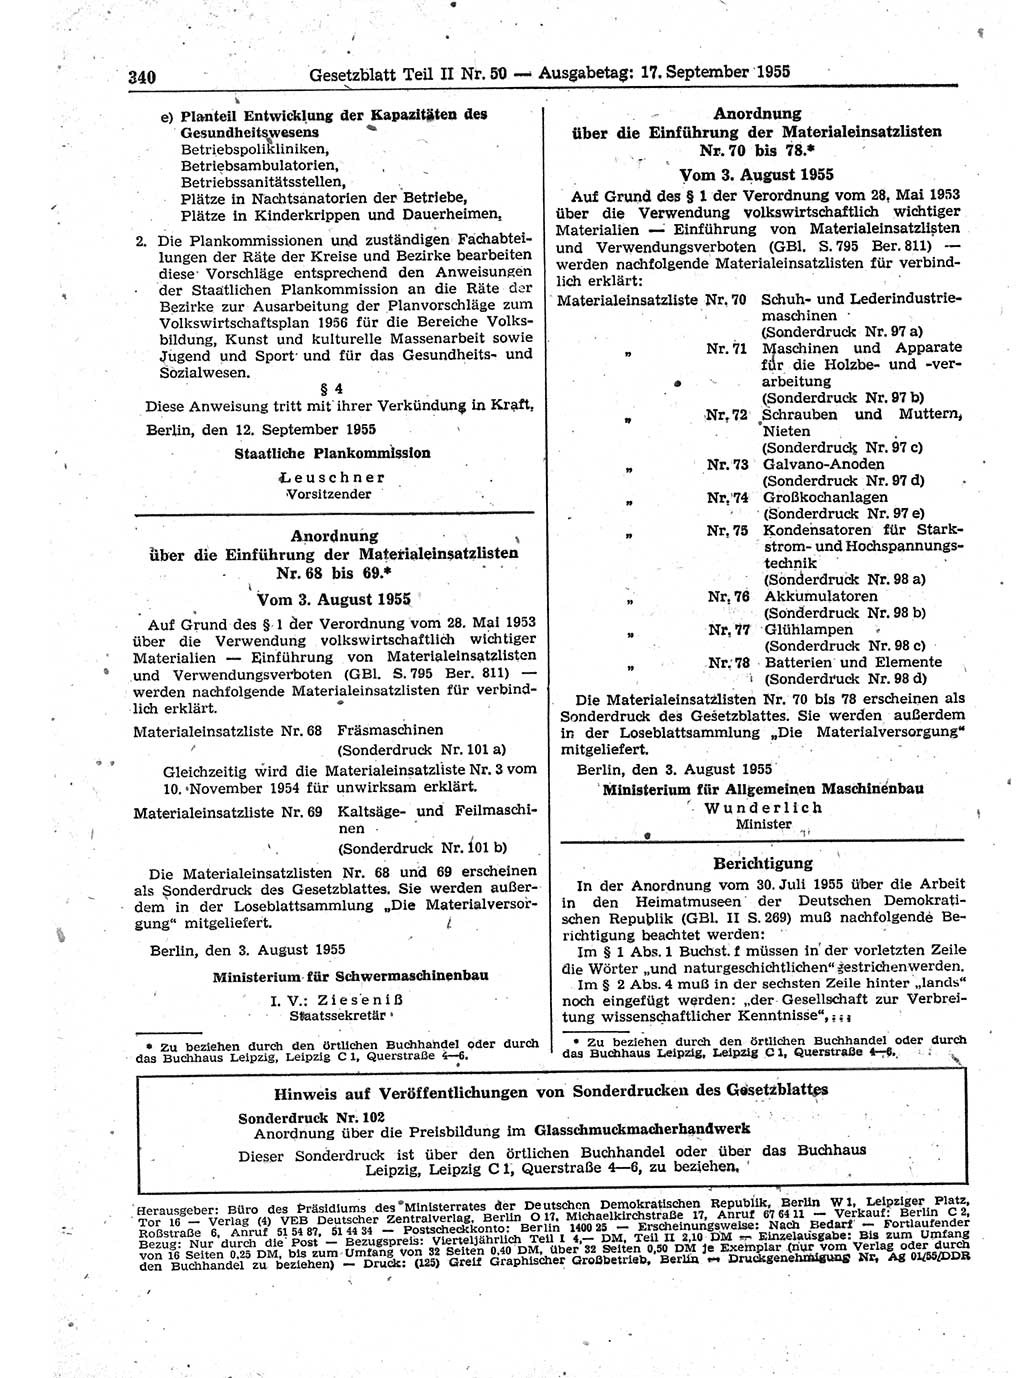 Gesetzblatt (GBl.) der Deutschen Demokratischen Republik (DDR) Teil ⅠⅠ 1955, Seite 340 (GBl. DDR ⅠⅠ 1955, S. 340)